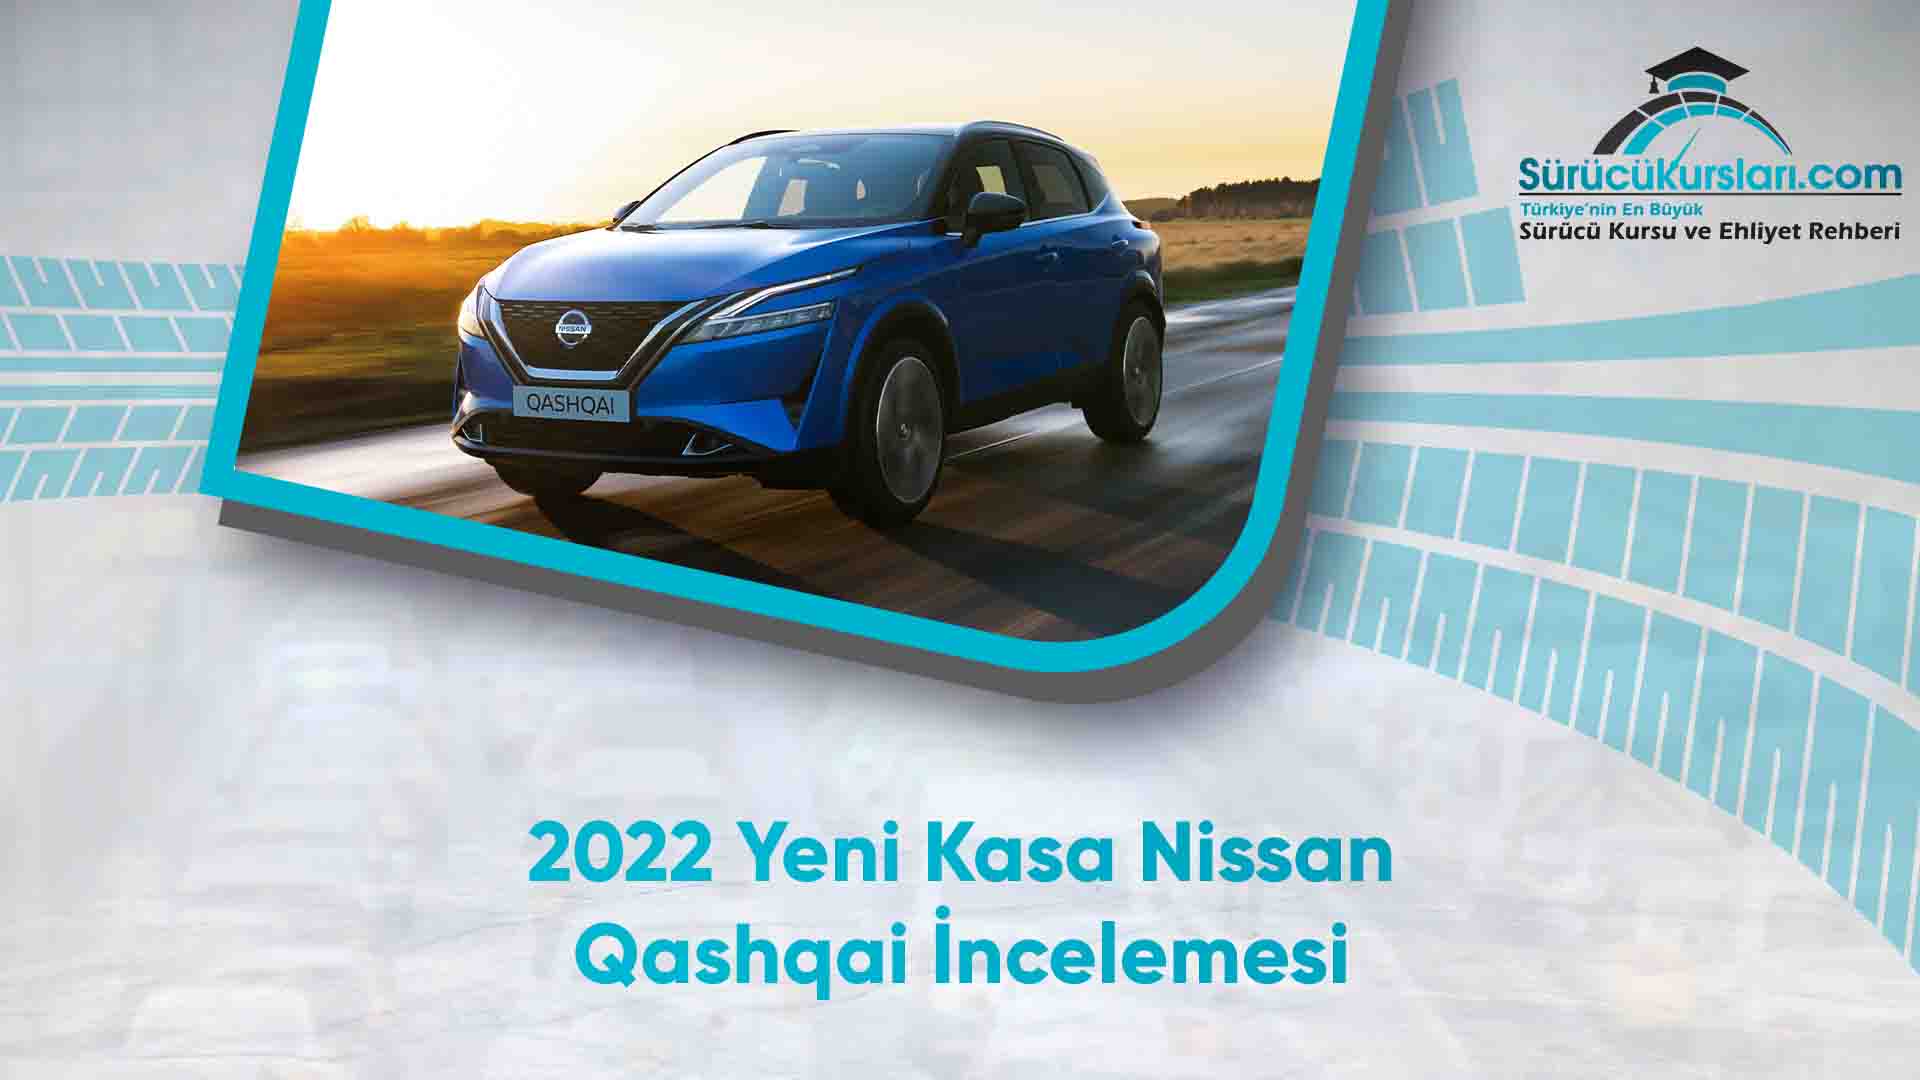 2022 Yeni Kasa Nissan Qashqai İncelemesi